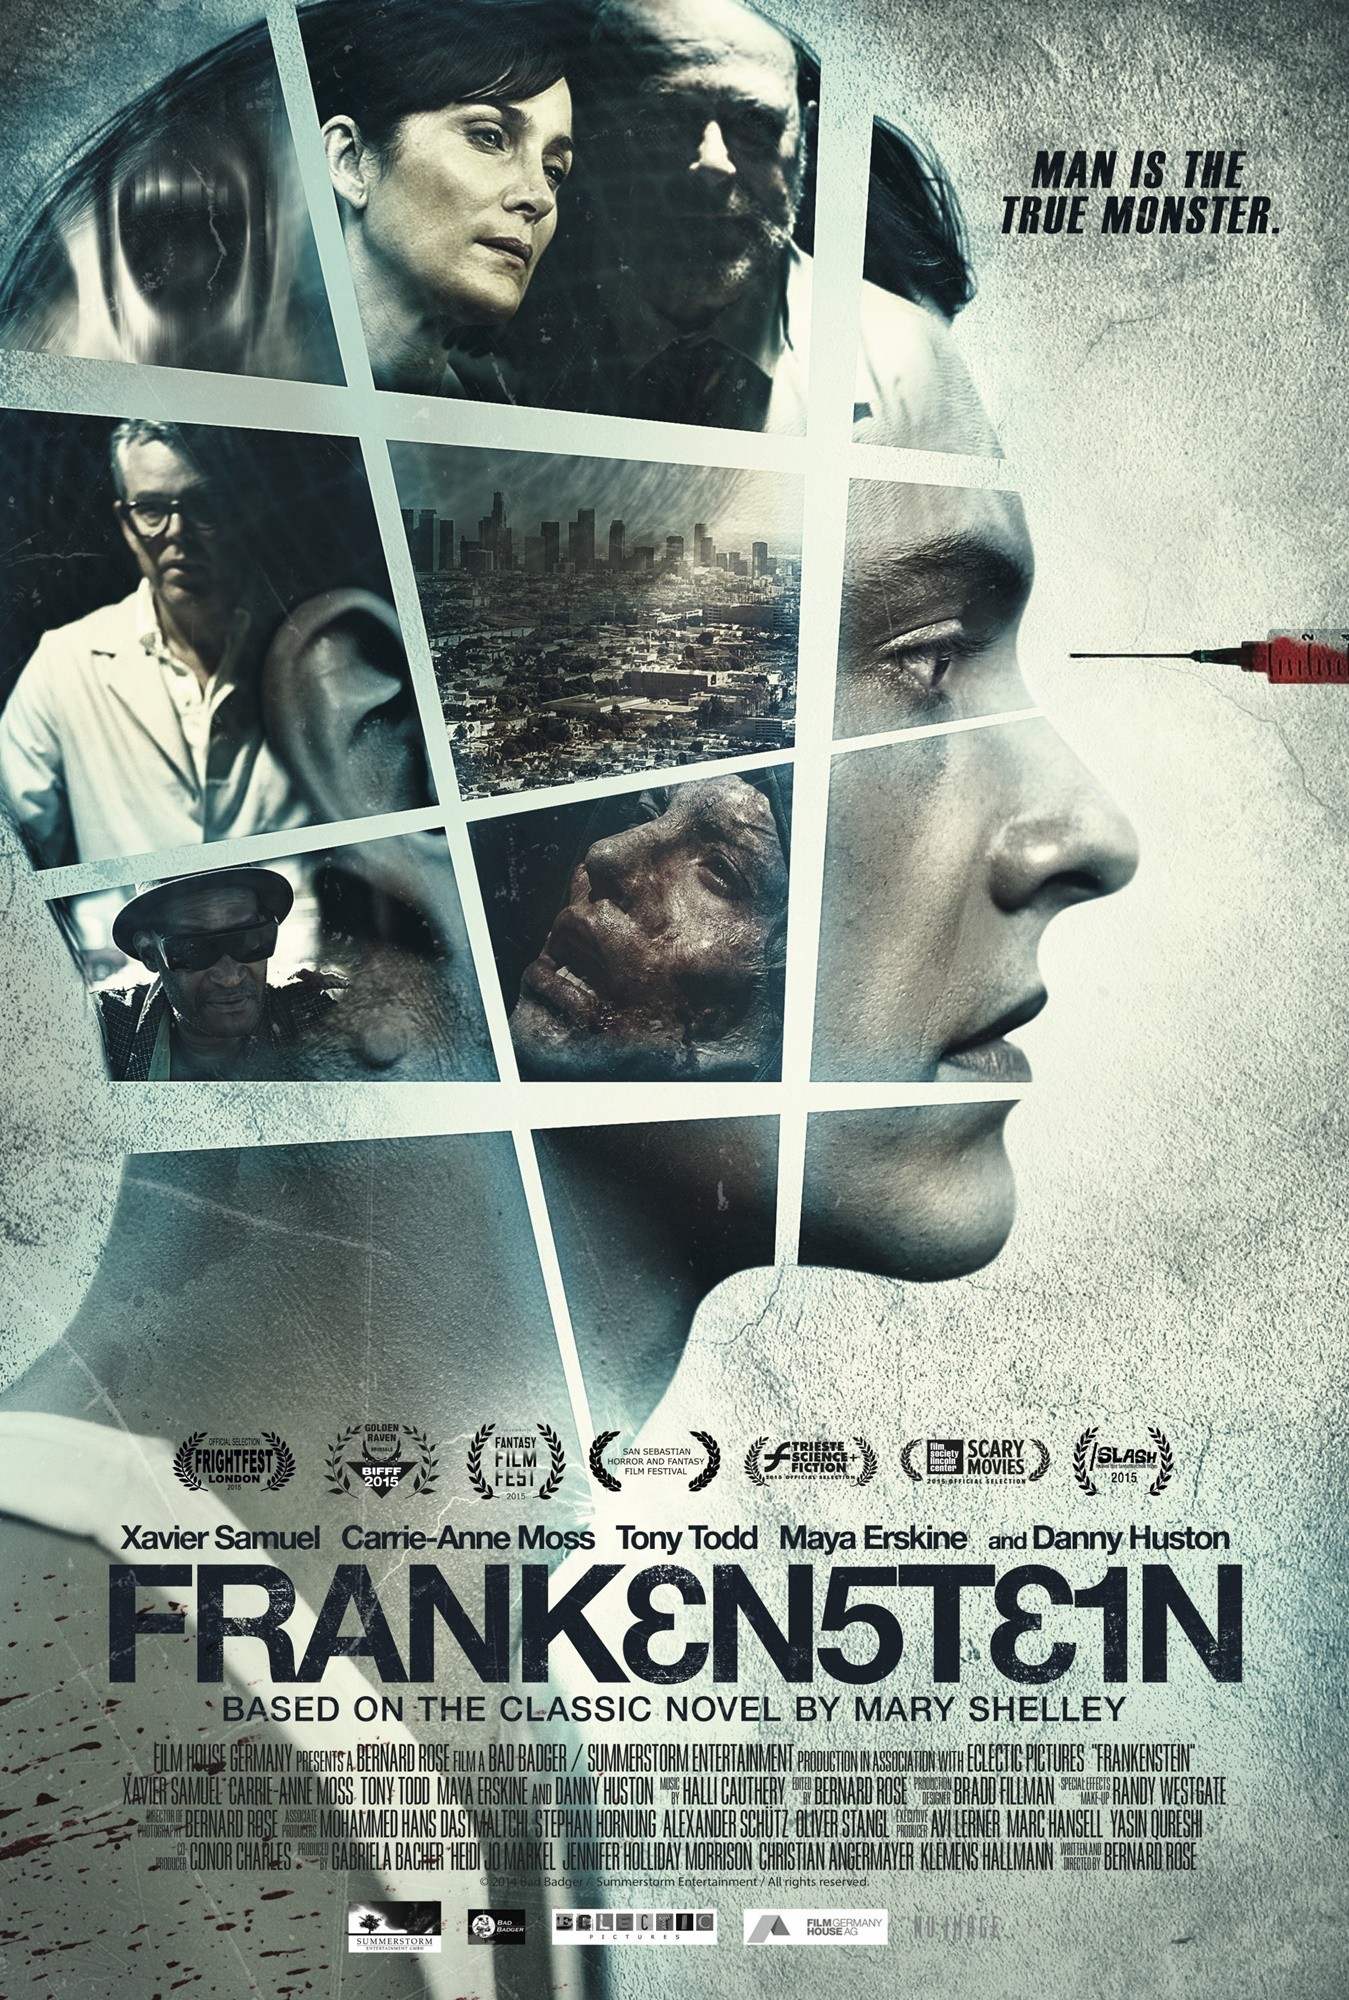 Poster of Alchemy's Frankenstein (2015)